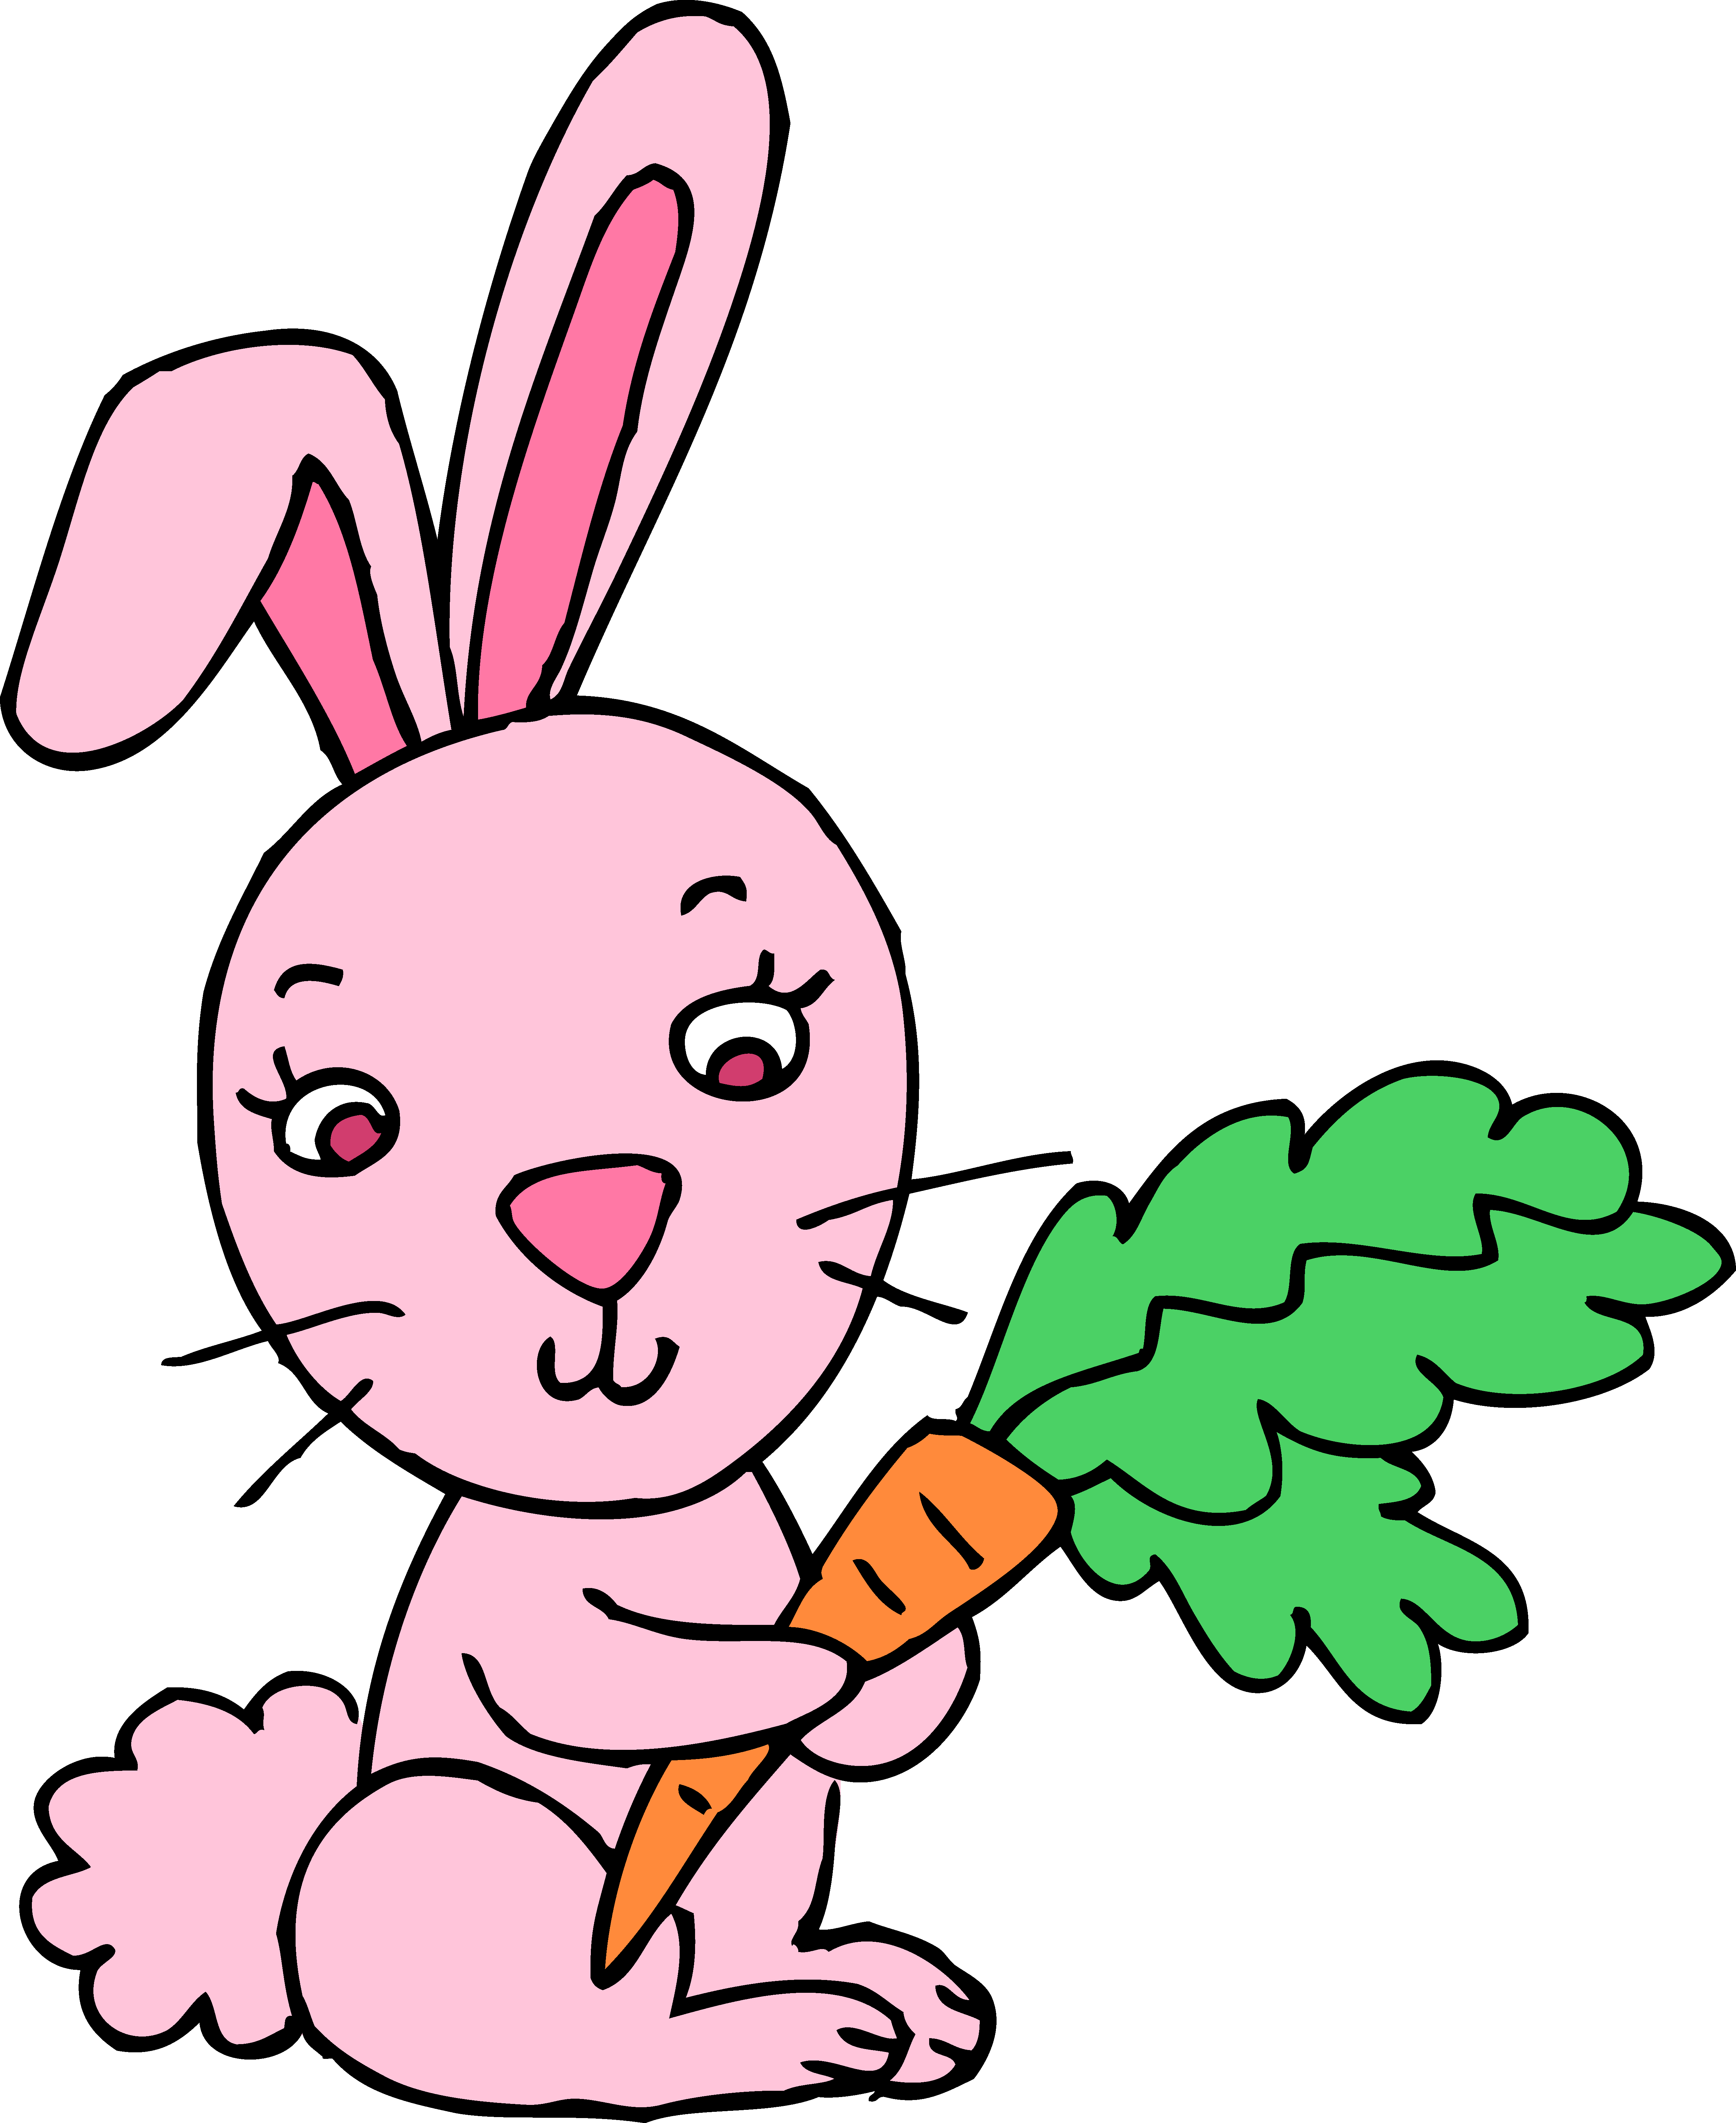 ... Cute Rabbit Vector - Cute